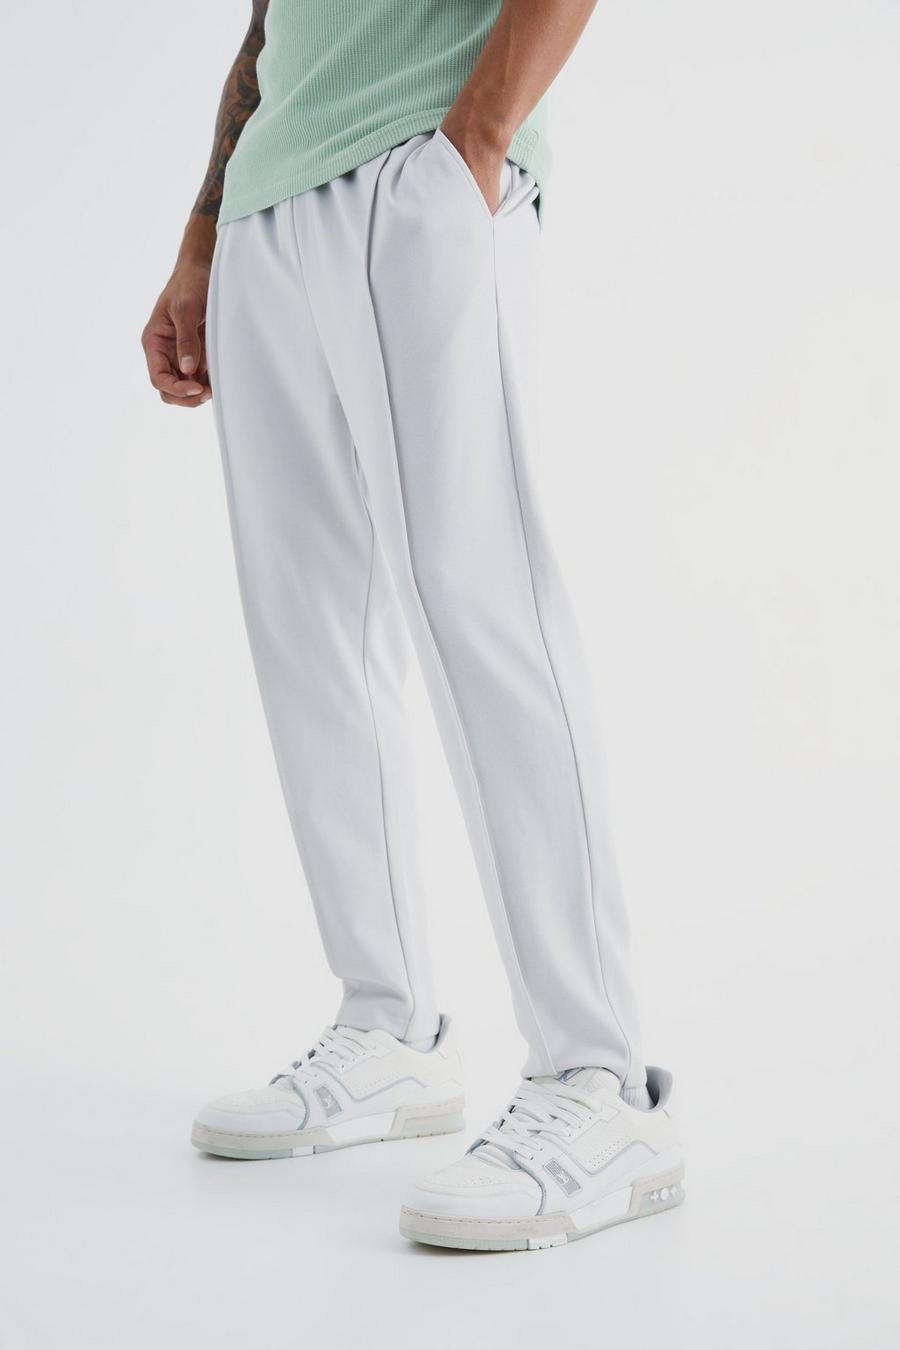 Schmale Slim-Fit Jogginghose mit elastischem Bund, Light grey grau